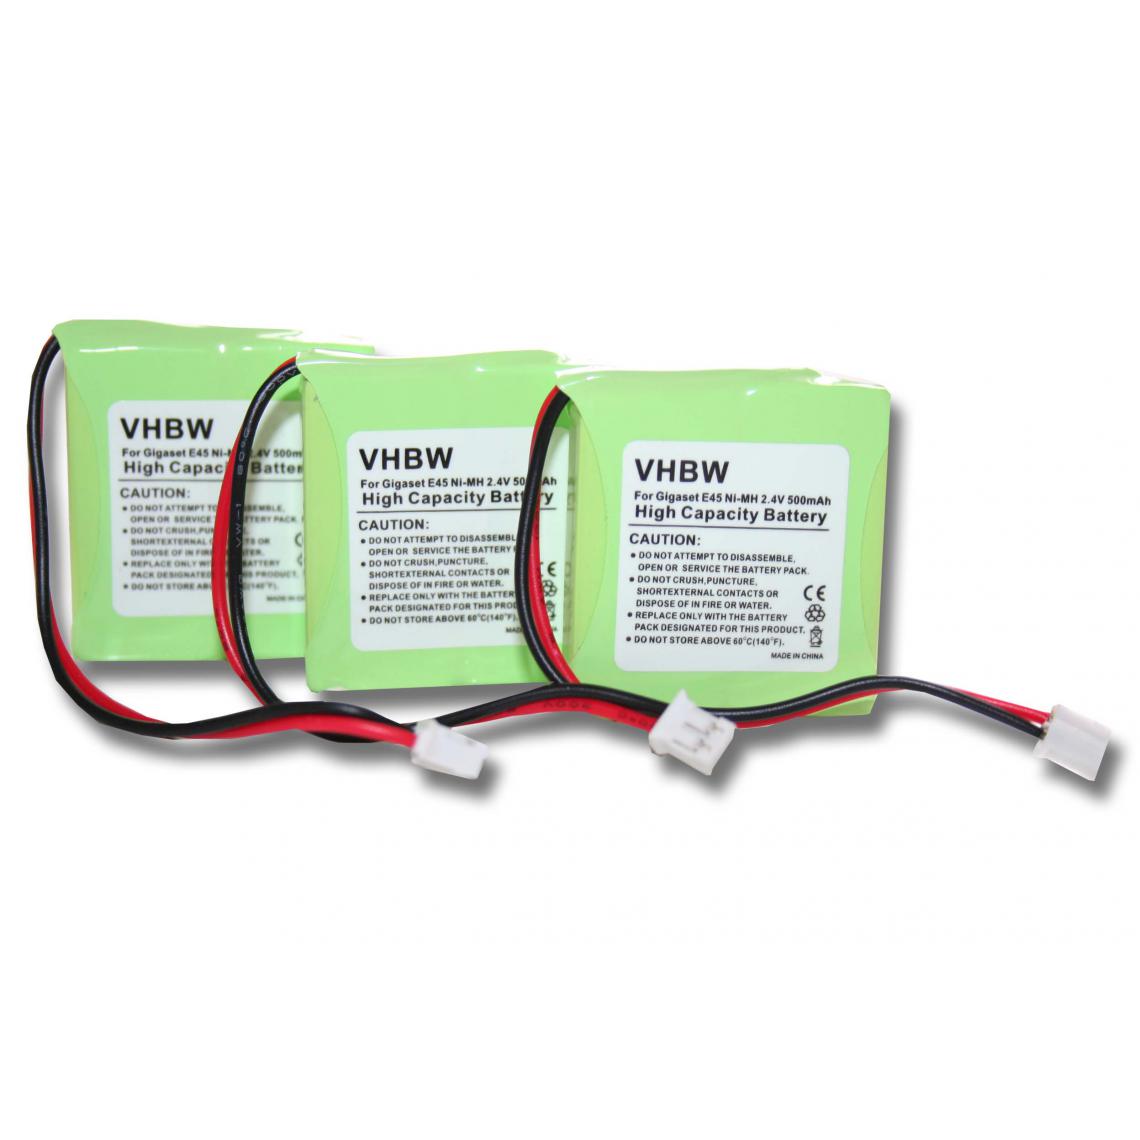 Vhbw - 3 x batteries Ni-MH 650mAh (2,4 V) pour Siemens Gigaset E45, E450, E455, Swisscom Aton CL-102 notamment. Remplace V30145-K1310-X382 - Batterie téléphone